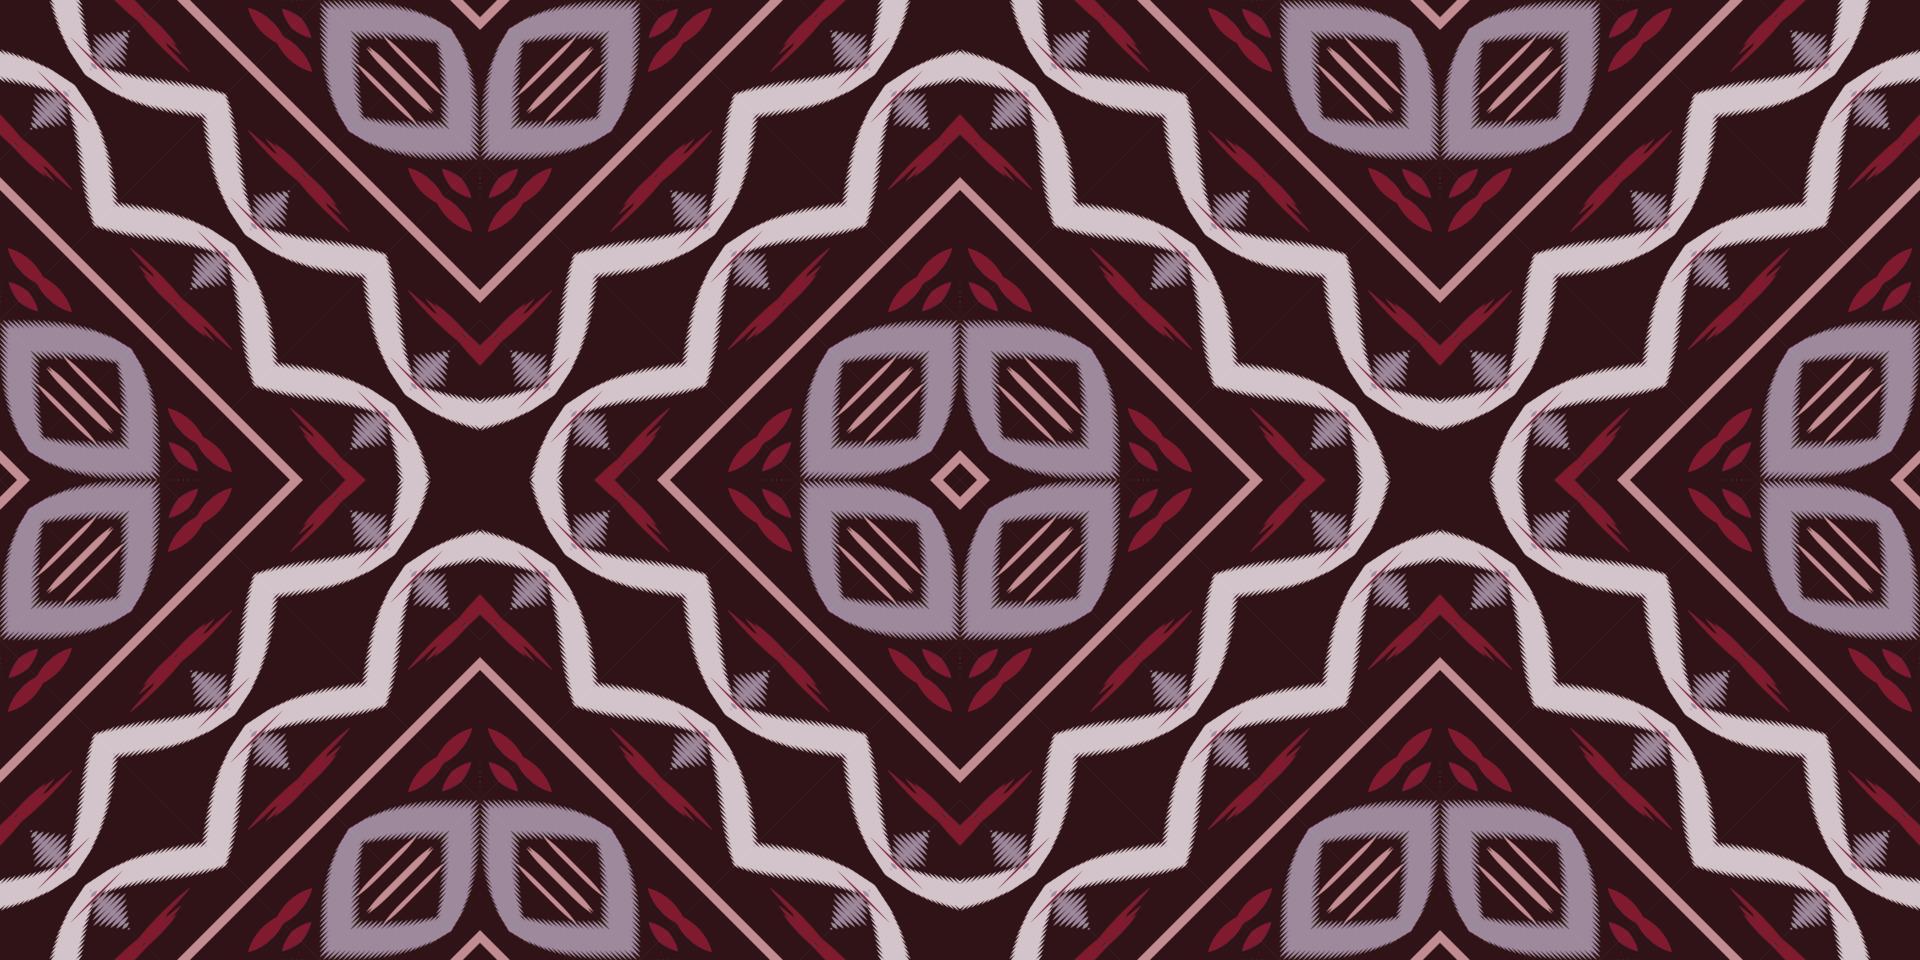 ikat punktiert stammes-afrikanisches nahtloses muster. ethnische geometrische ikkat batik digitaler vektor textildesign für drucke stoff saree mughal pinsel symbol schwaden textur kurti kurtis kurtas